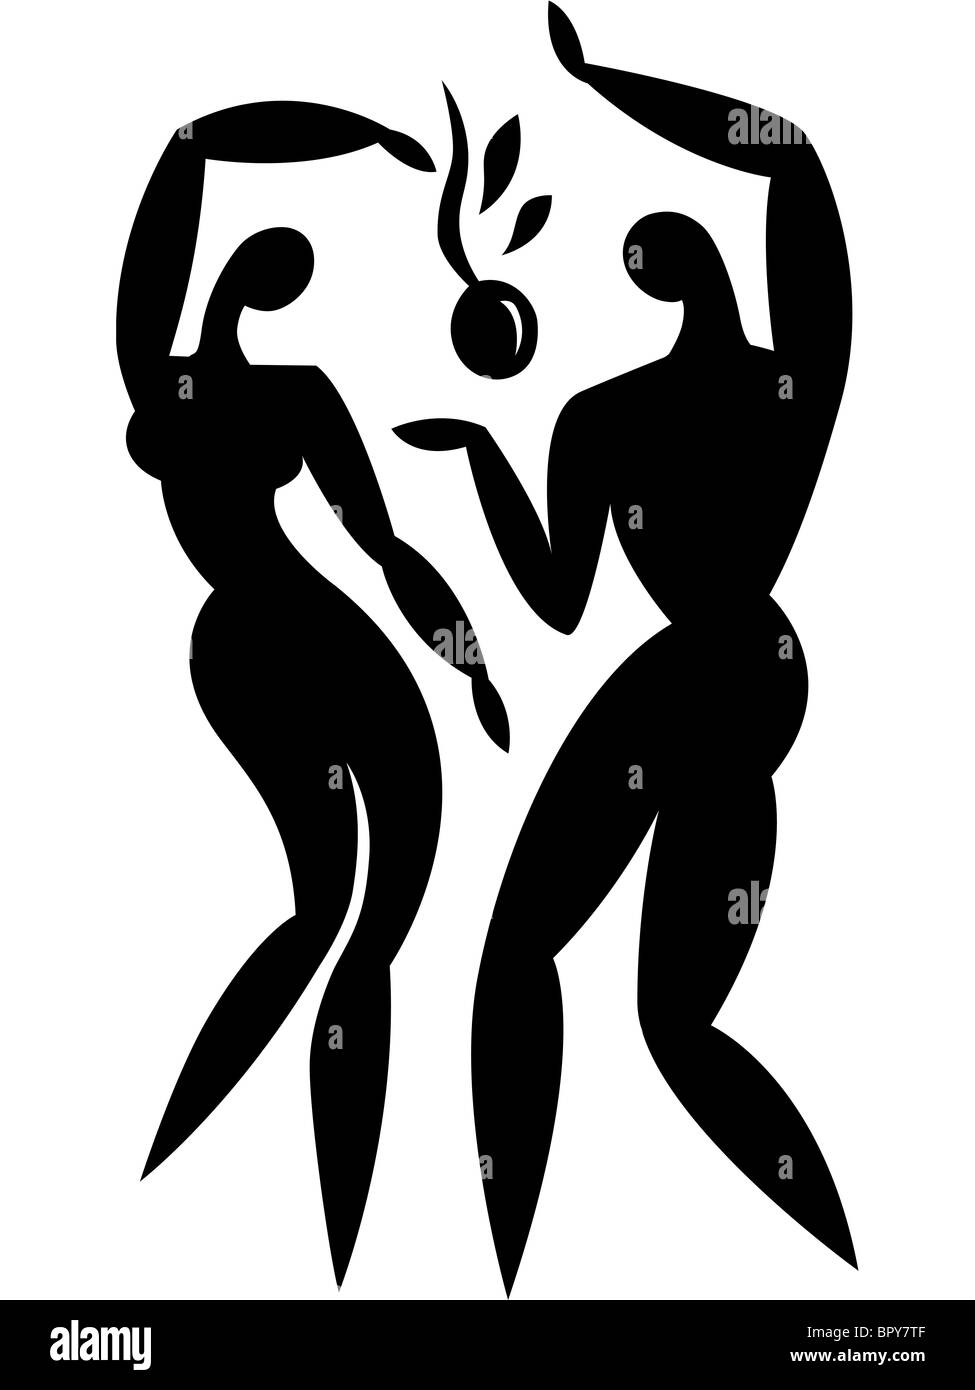 Illustration de deux personnes semblables à Adam et Eve Banque D'Images